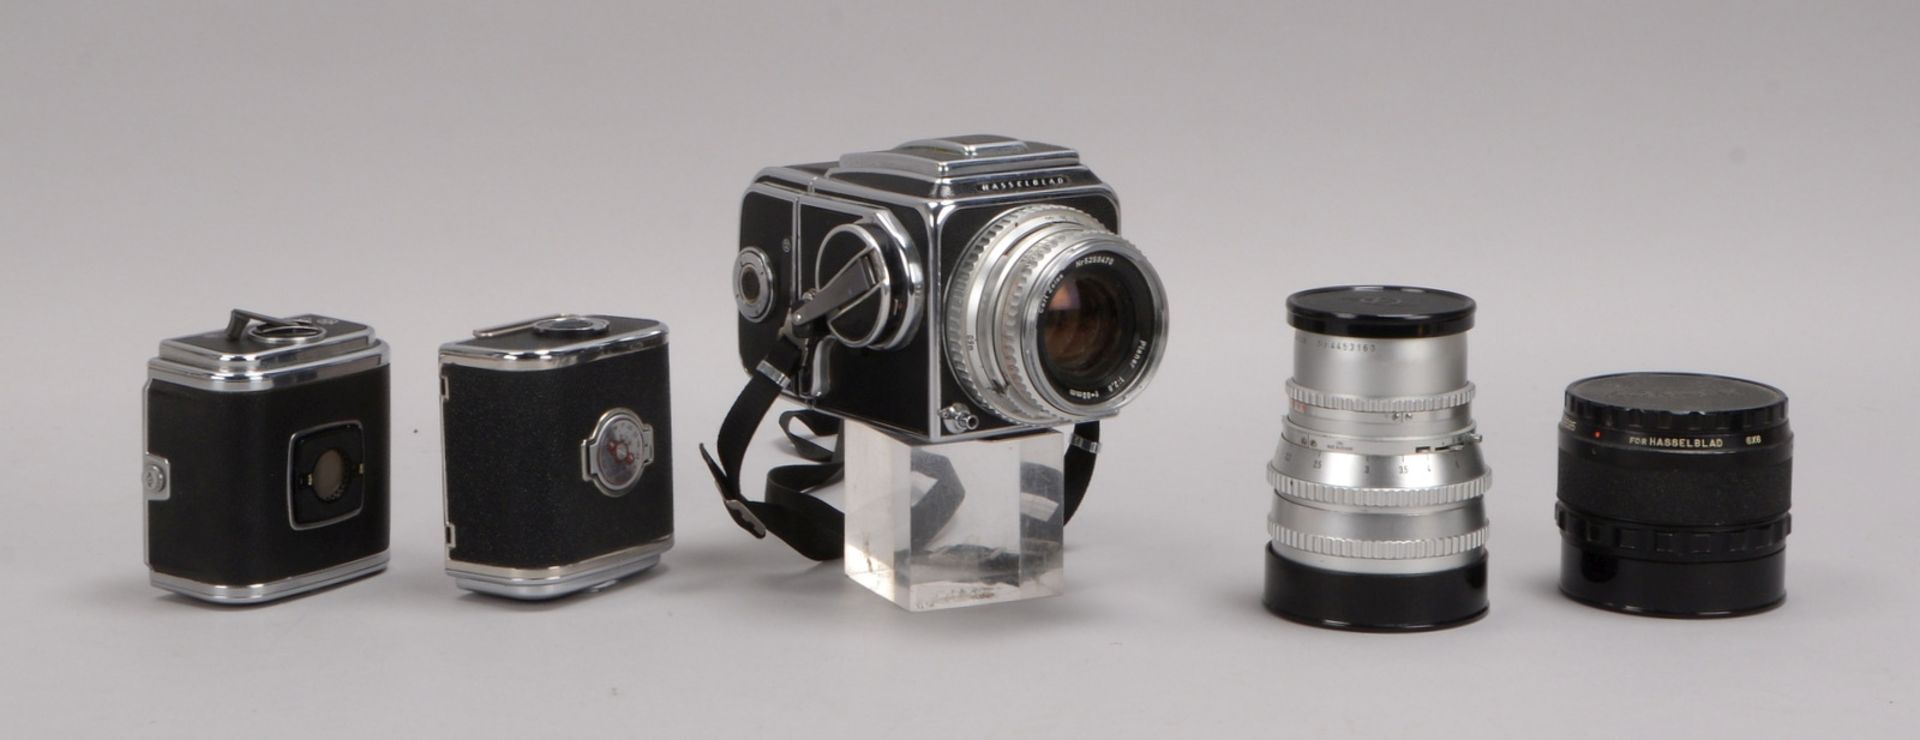 Sammler-Fotokamera: Hasselblad '500 C', mit Objektiven und untersch. Zubehör